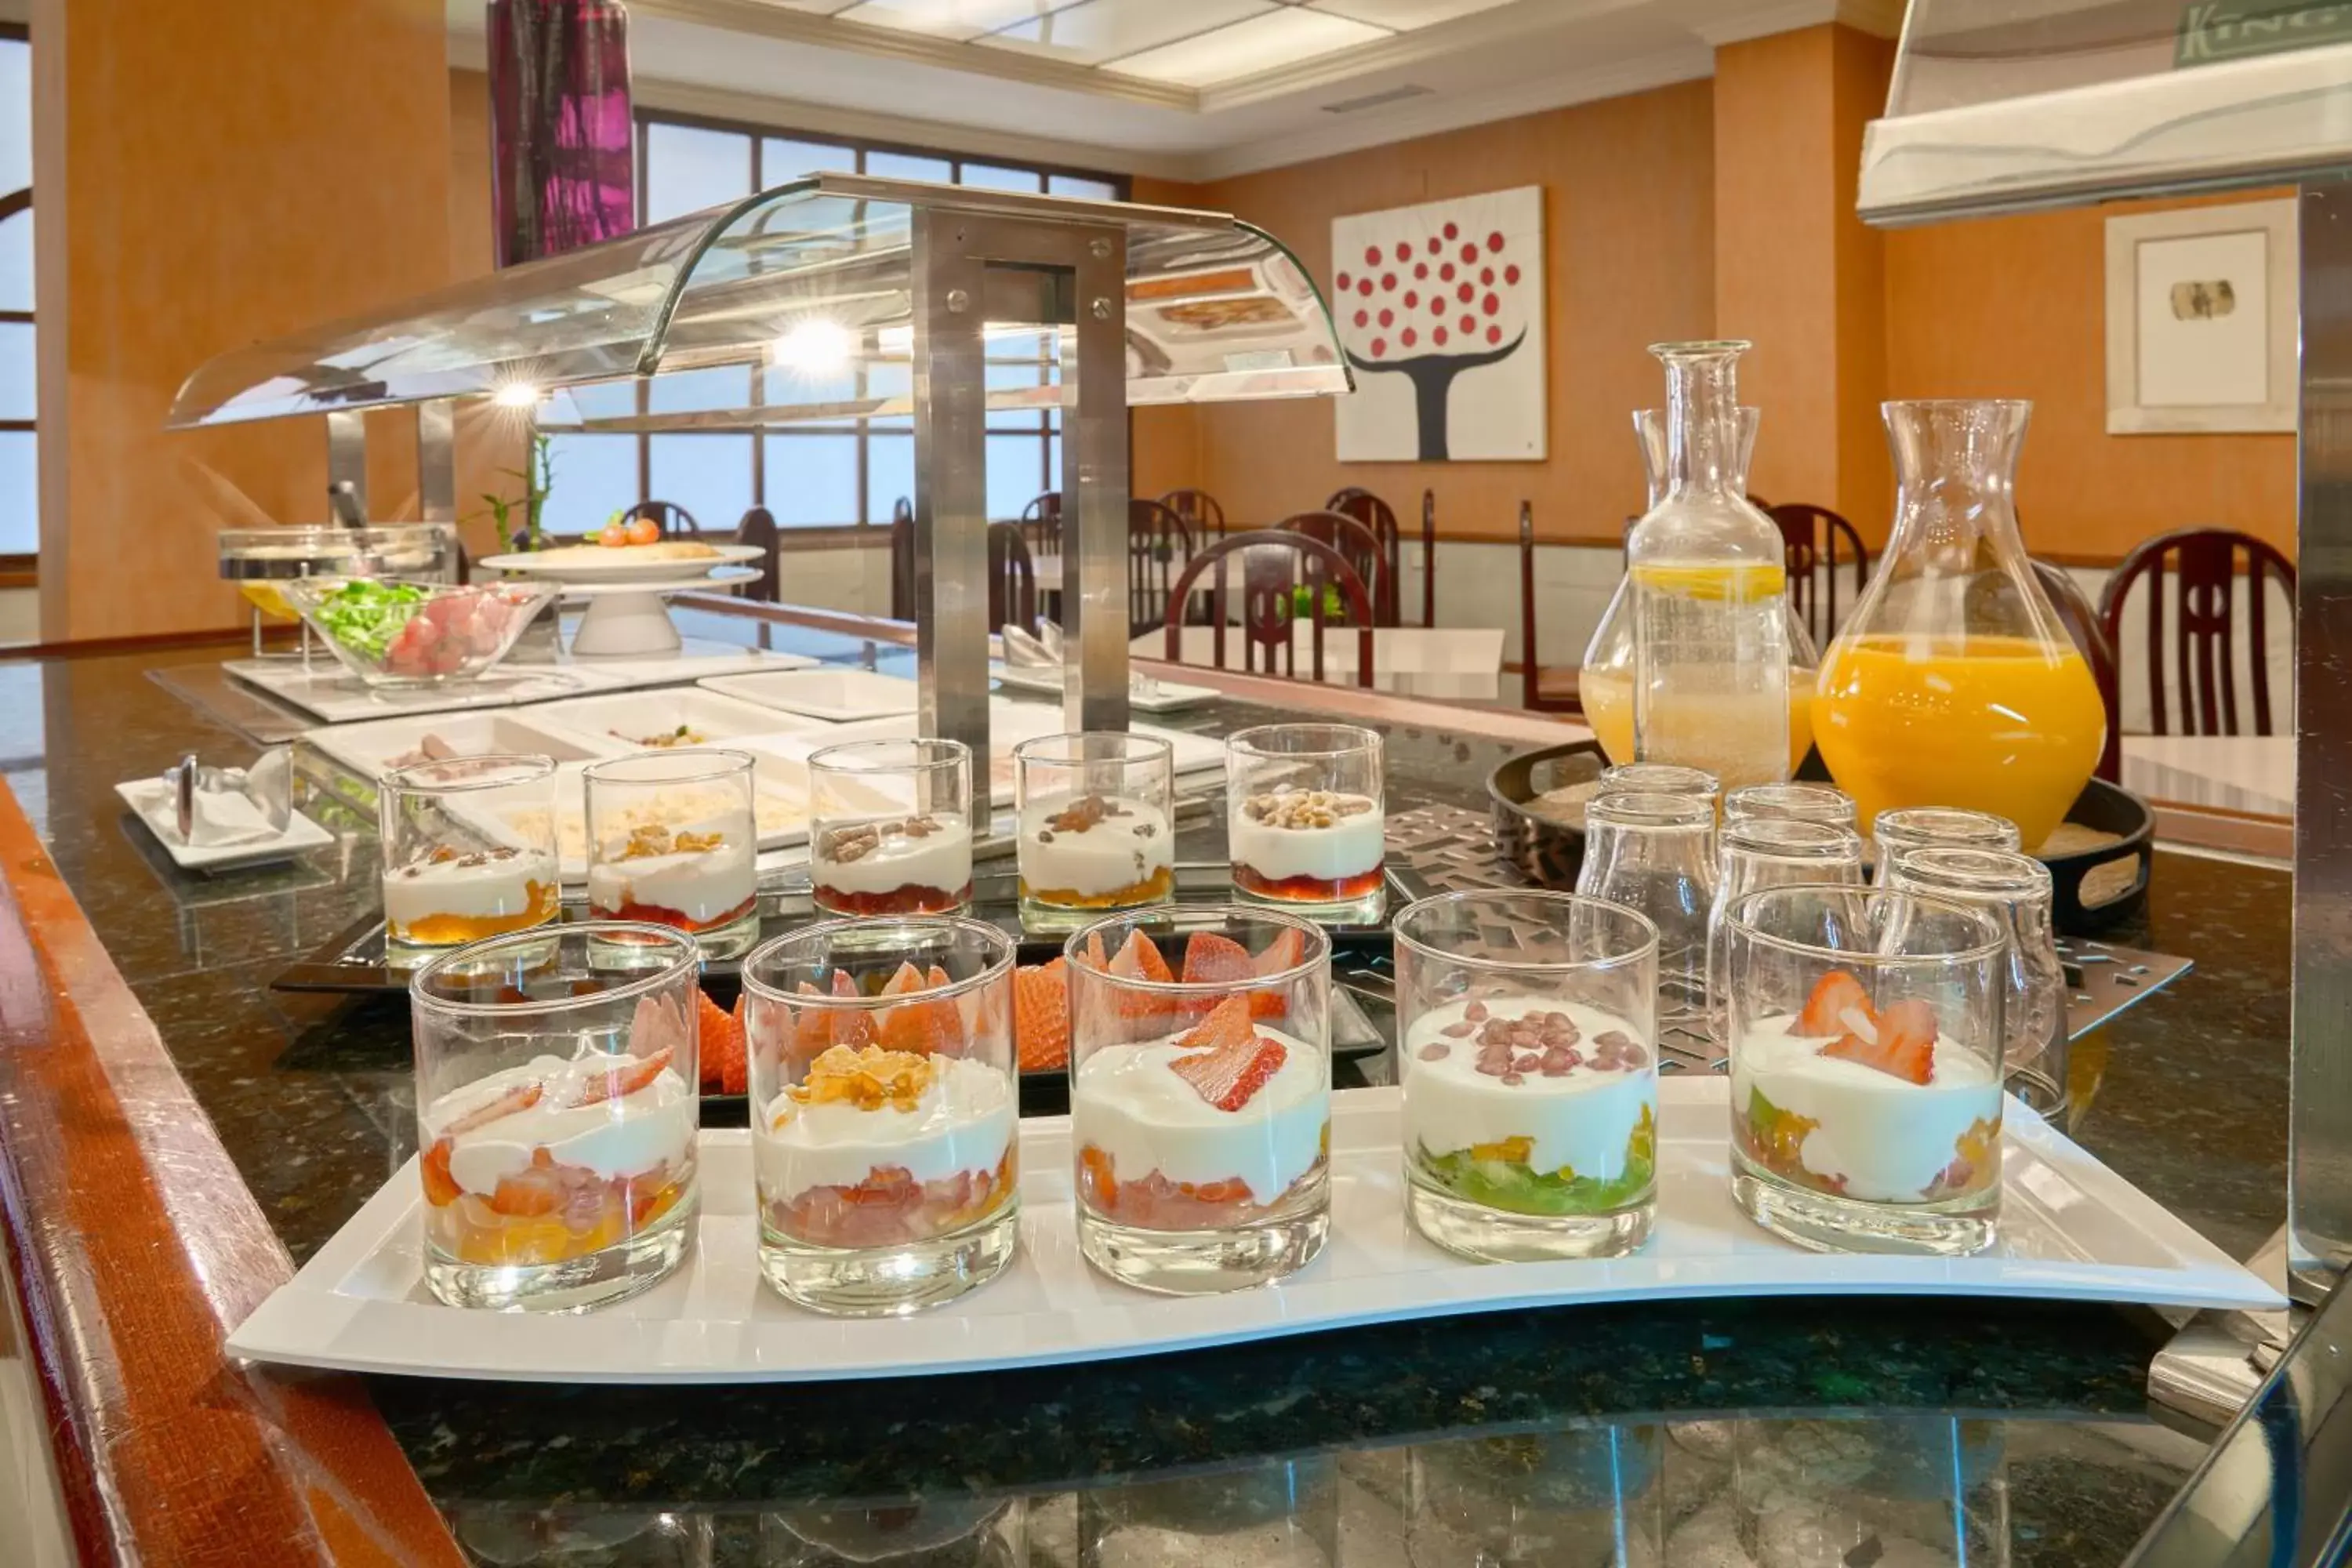 Buffet breakfast in Hotel Macià Cóndor